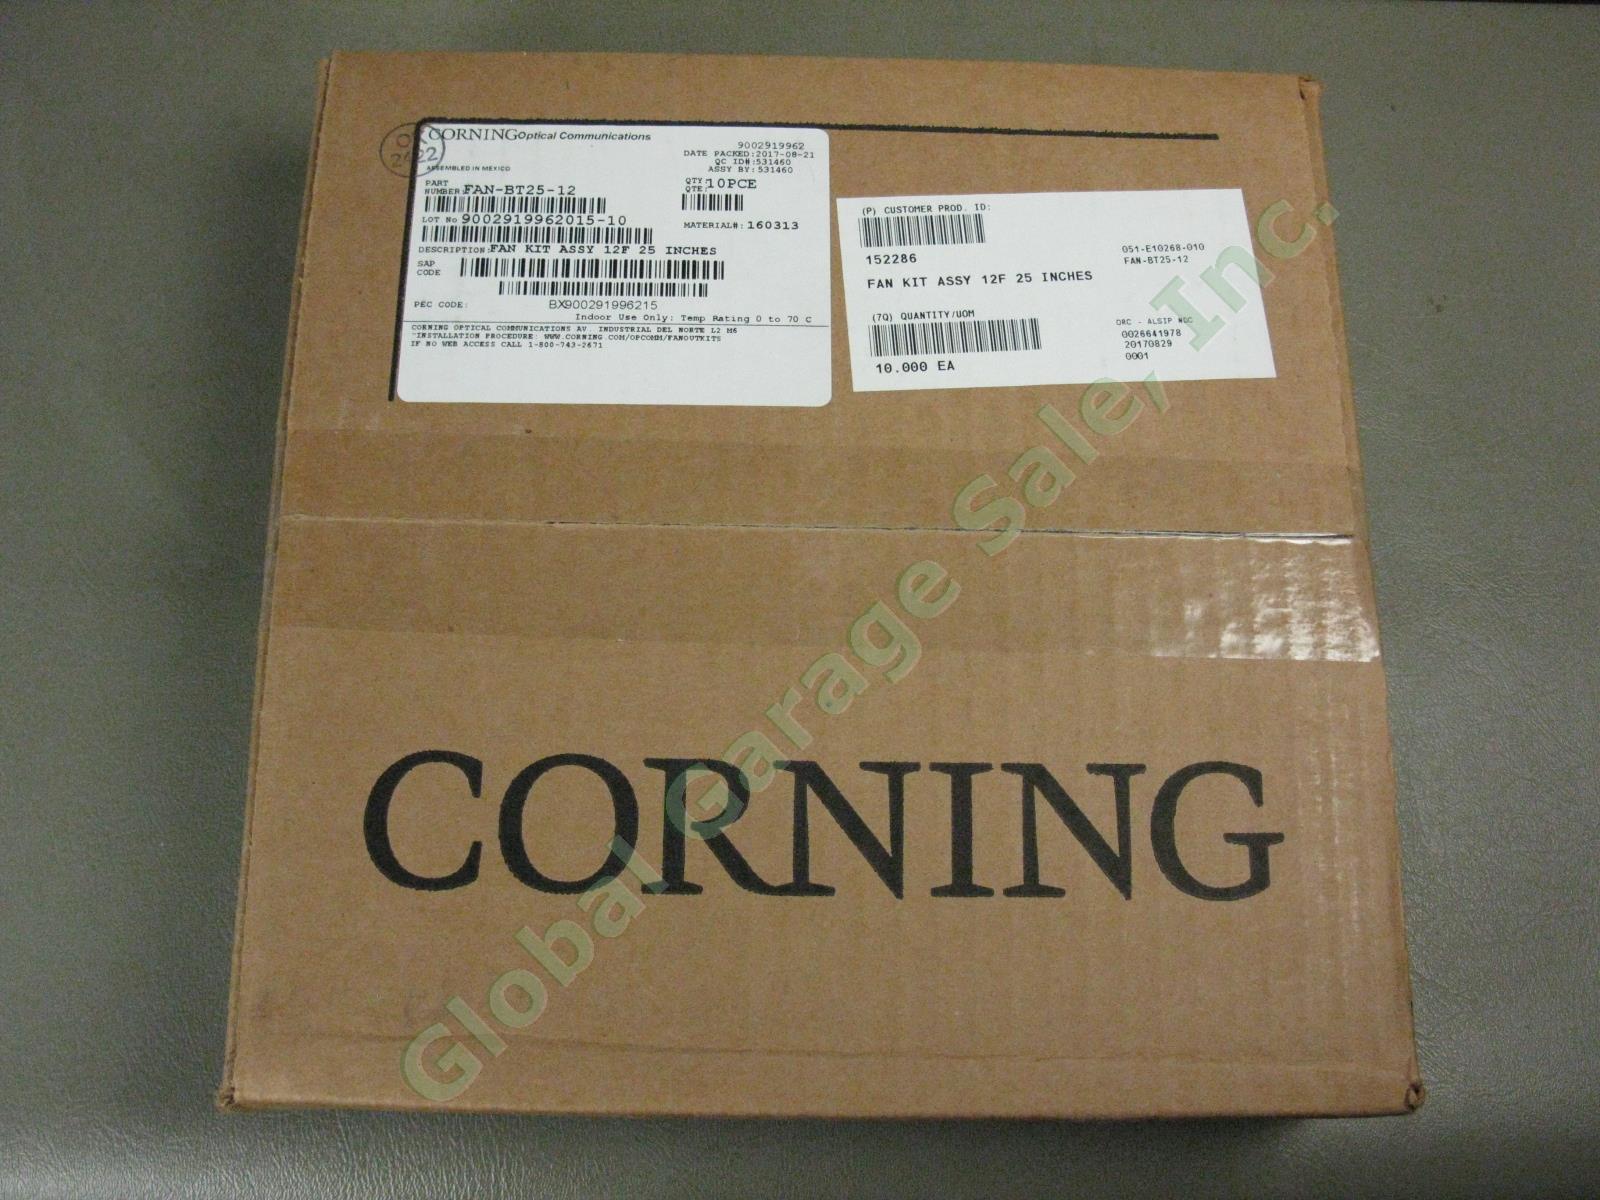 10 NEW Sealed Corning Buffer Tube Fan-Out Kits FAN-BT25-12 Fiber 25" Inches Legs